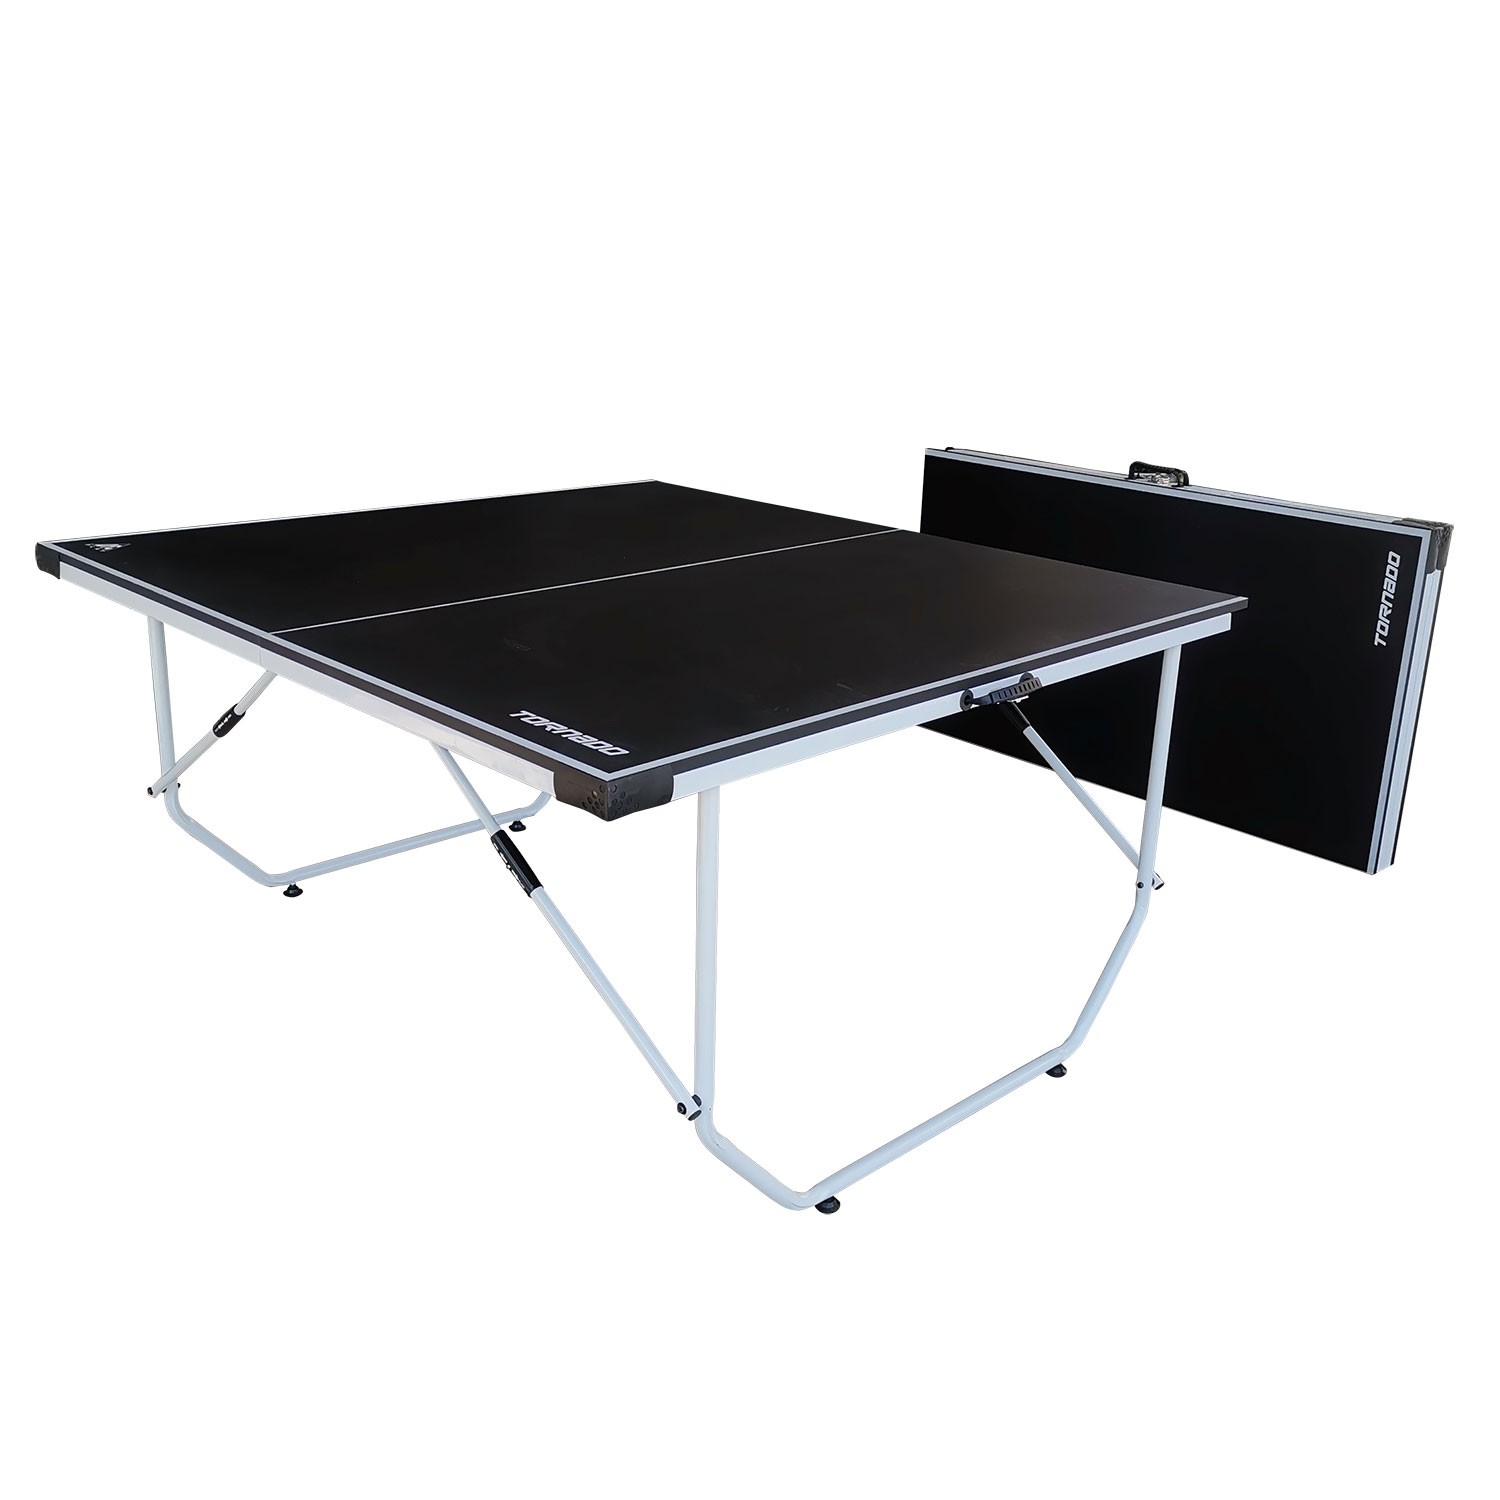 Теннисный стол DFC TORNADO Home Compact для помещения, черный, складной, изображение 4